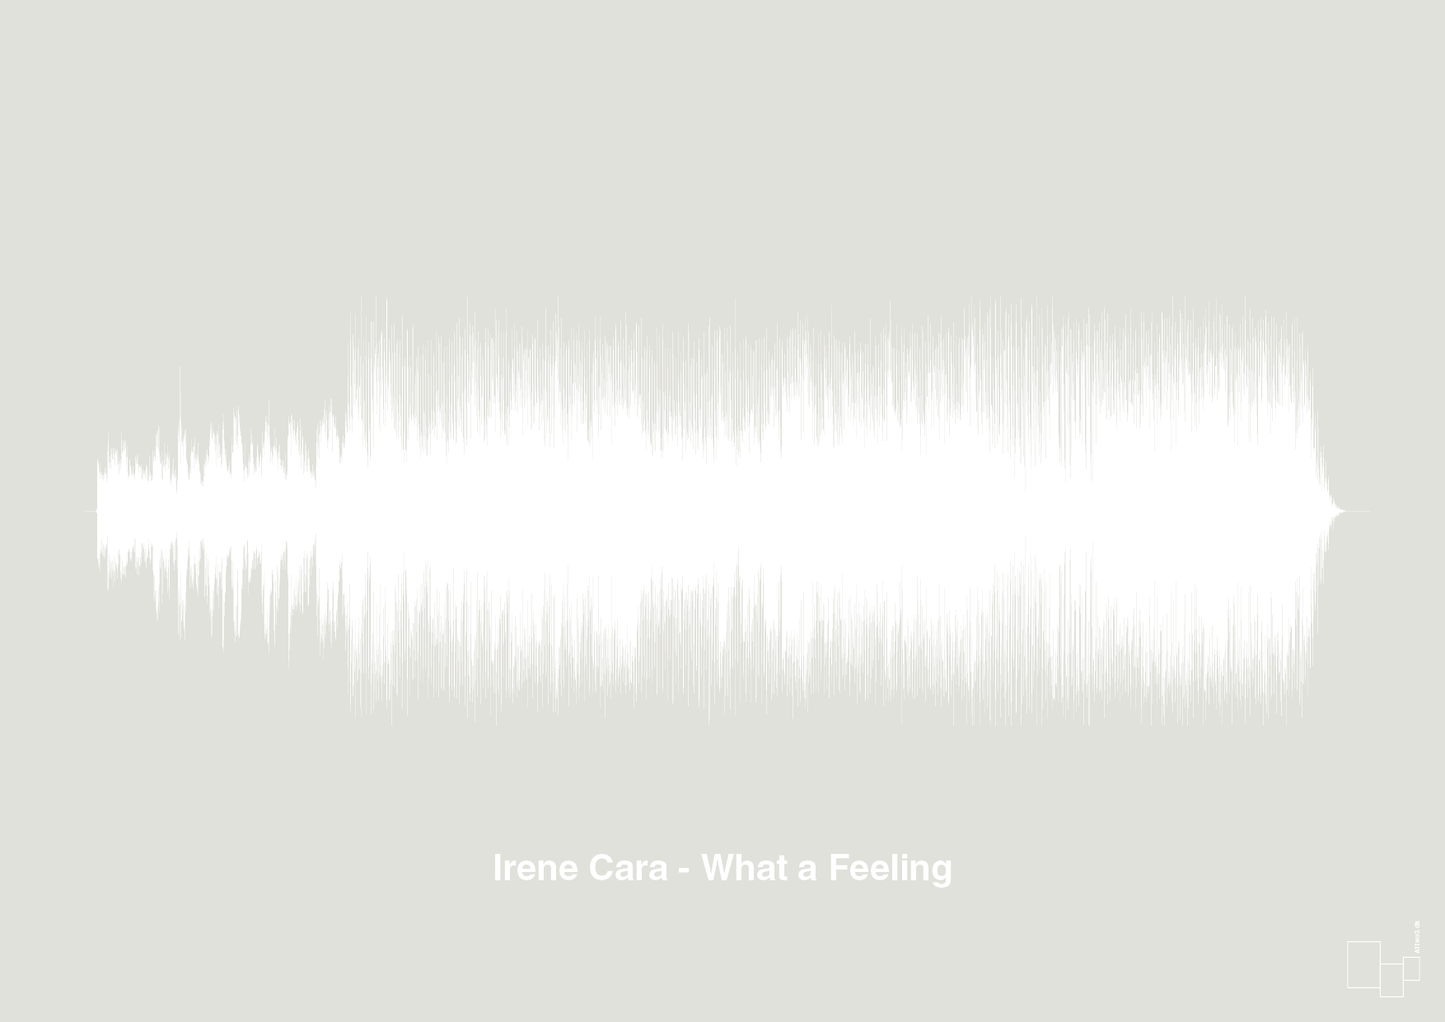 irene cara - what a feeling - Plakat med Musik i Painters White